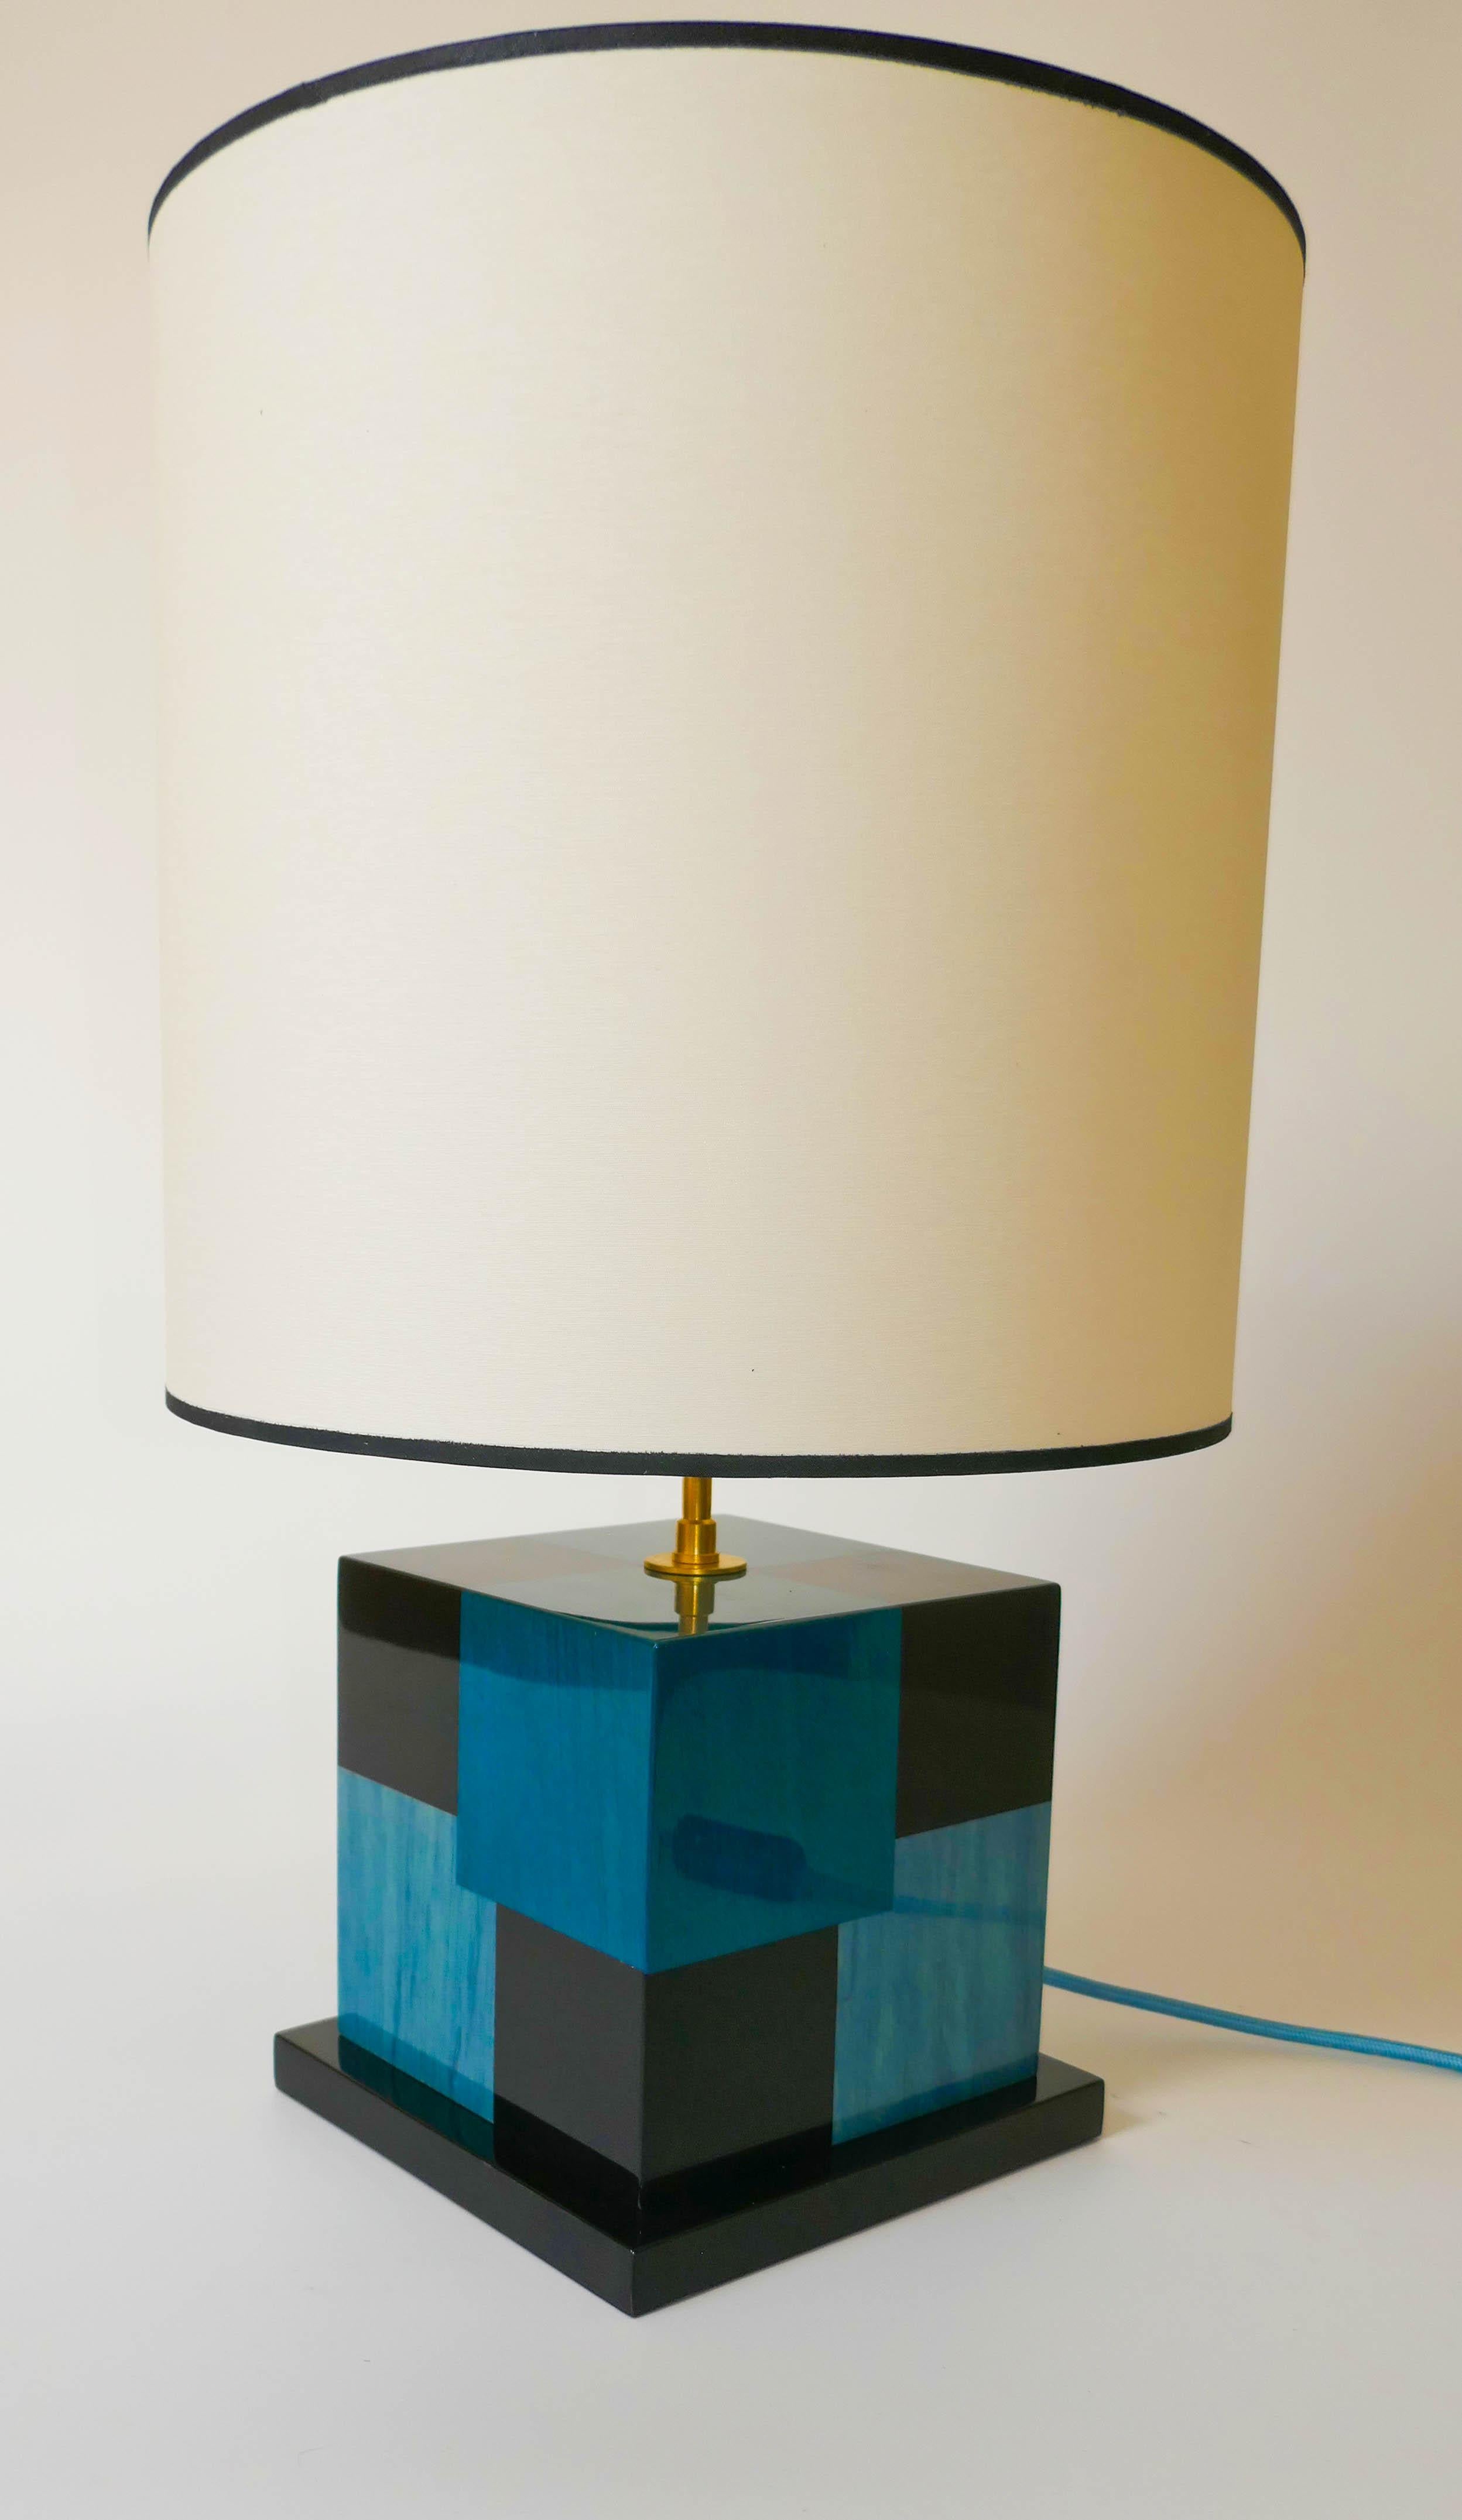 Lampe de table en marqueterie de sycomore teinté noir, bleu clair et bleu foncé.
Fabriquée avec soin dans notre atelier parisien, cette lampe a un effet cinétique utilisant les différentes couleurs pour créer une impression de profondeur. La lampe